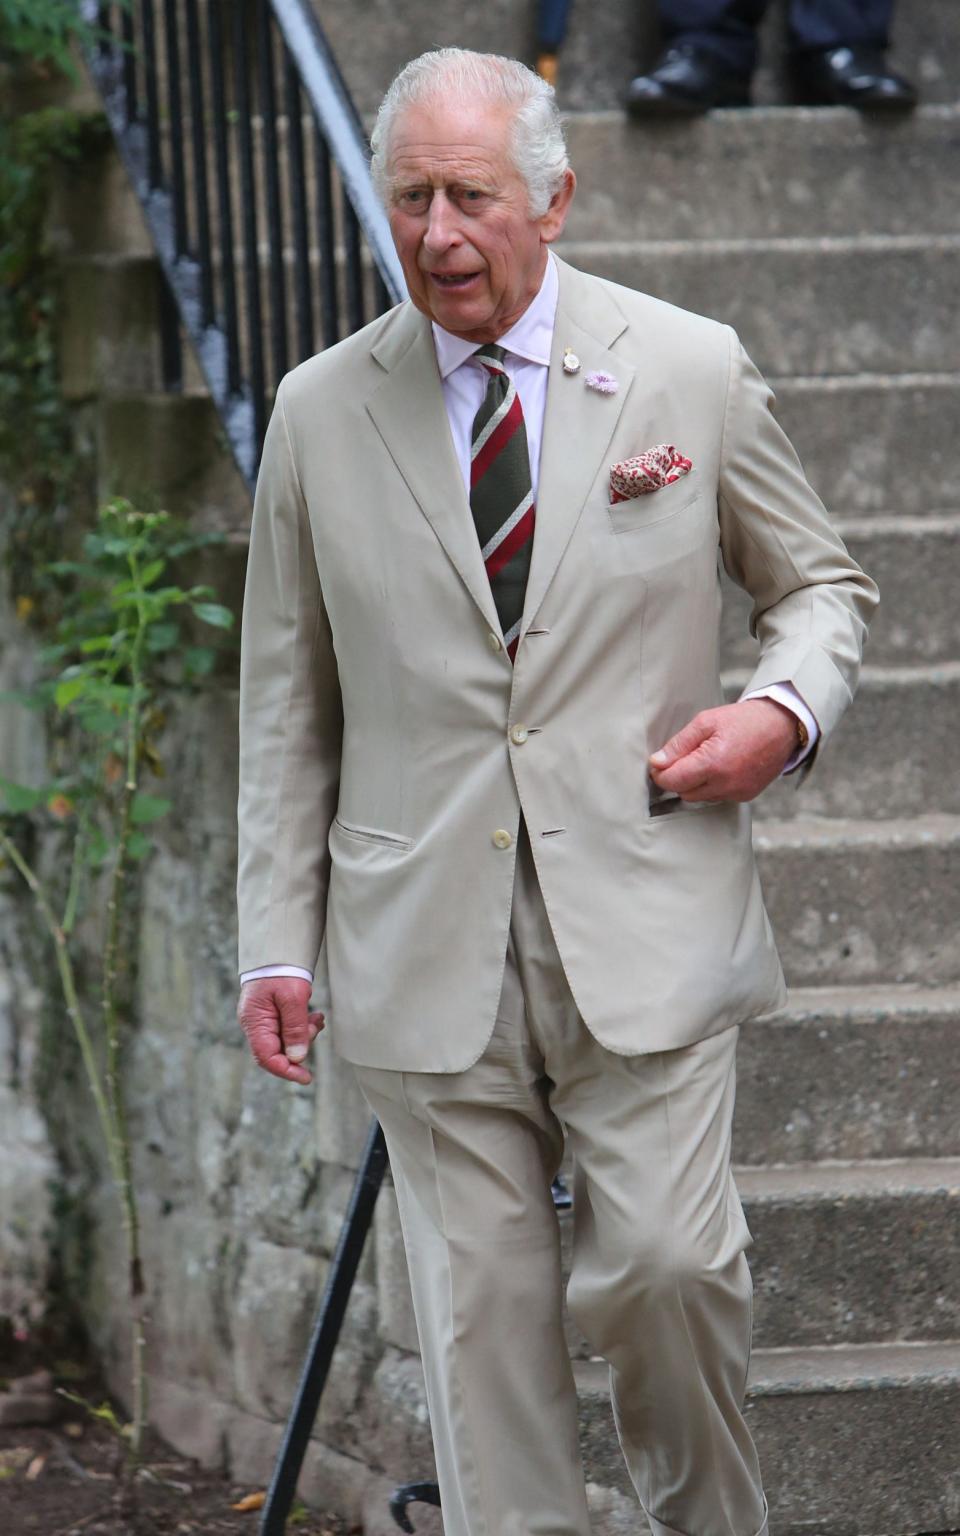 Une épaule plus nette et une jupe plus soignée de la veste améliorerait le roi Charles&# x002019 ;  silhouette